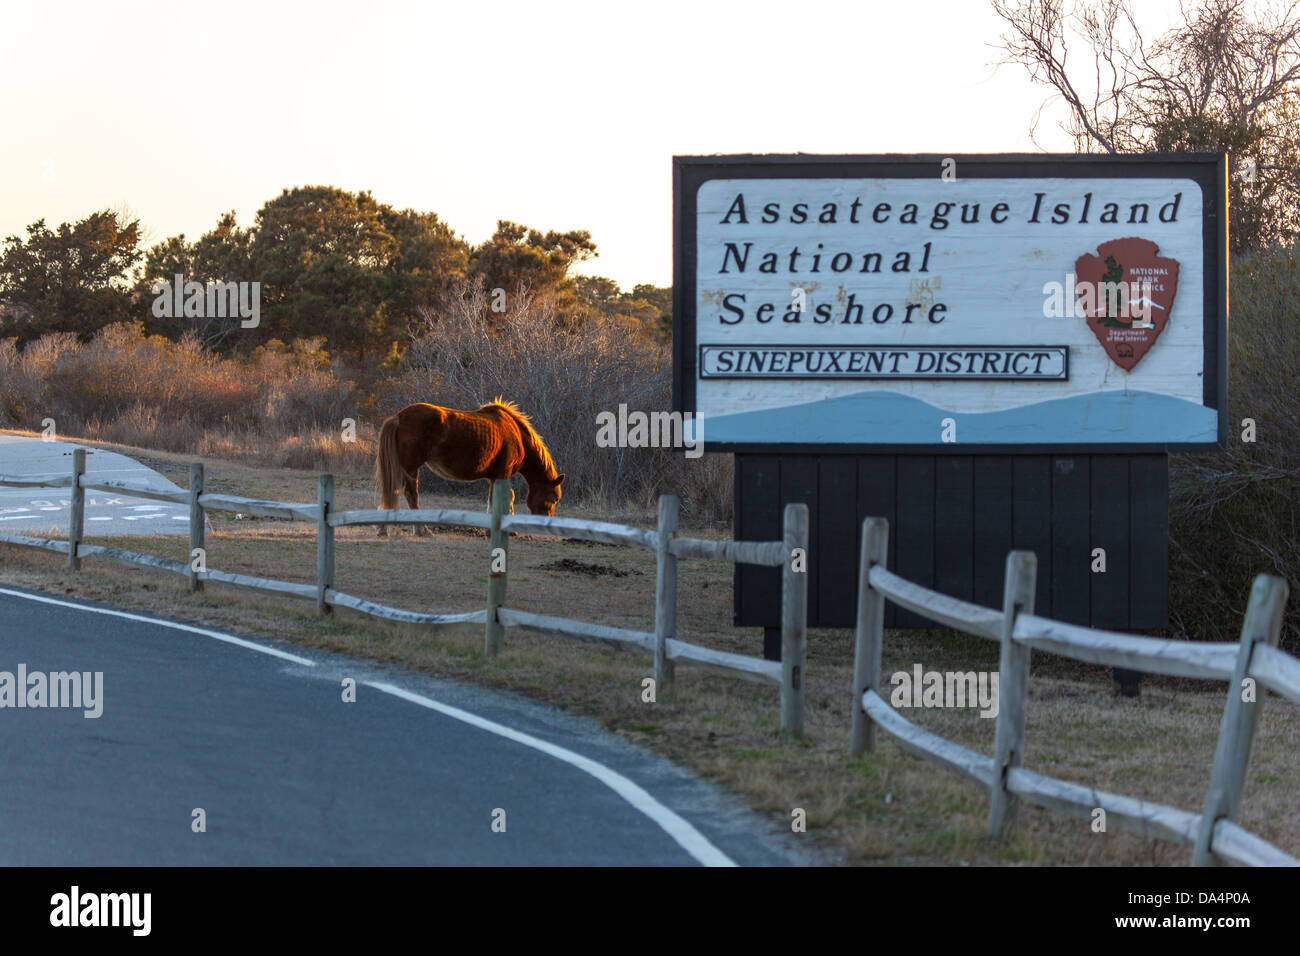 Assateague Island è un 37-miglio lungo isola barriera situato nel Maryland e Virginia. Esso include Il Assateague Island National Seashore, Assateague State Park e il Chincoteague National Wildlife Refuge. È noto per i suoi allevamenti di cavalli selvaggi, spiagge incontaminate e il Assateague Faro. Foto Stock